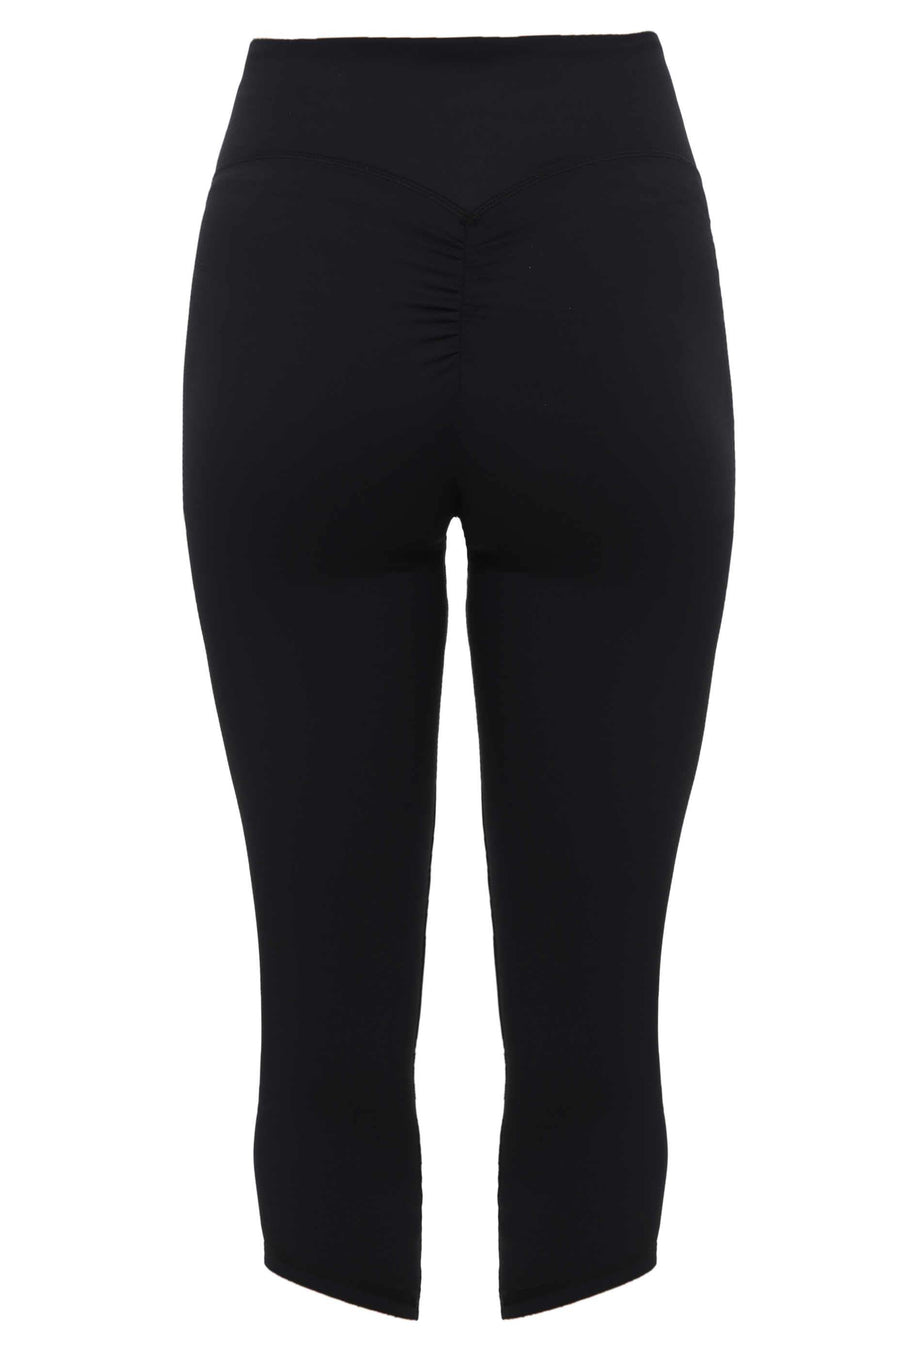 Capri Leggings: Classique Black leggings